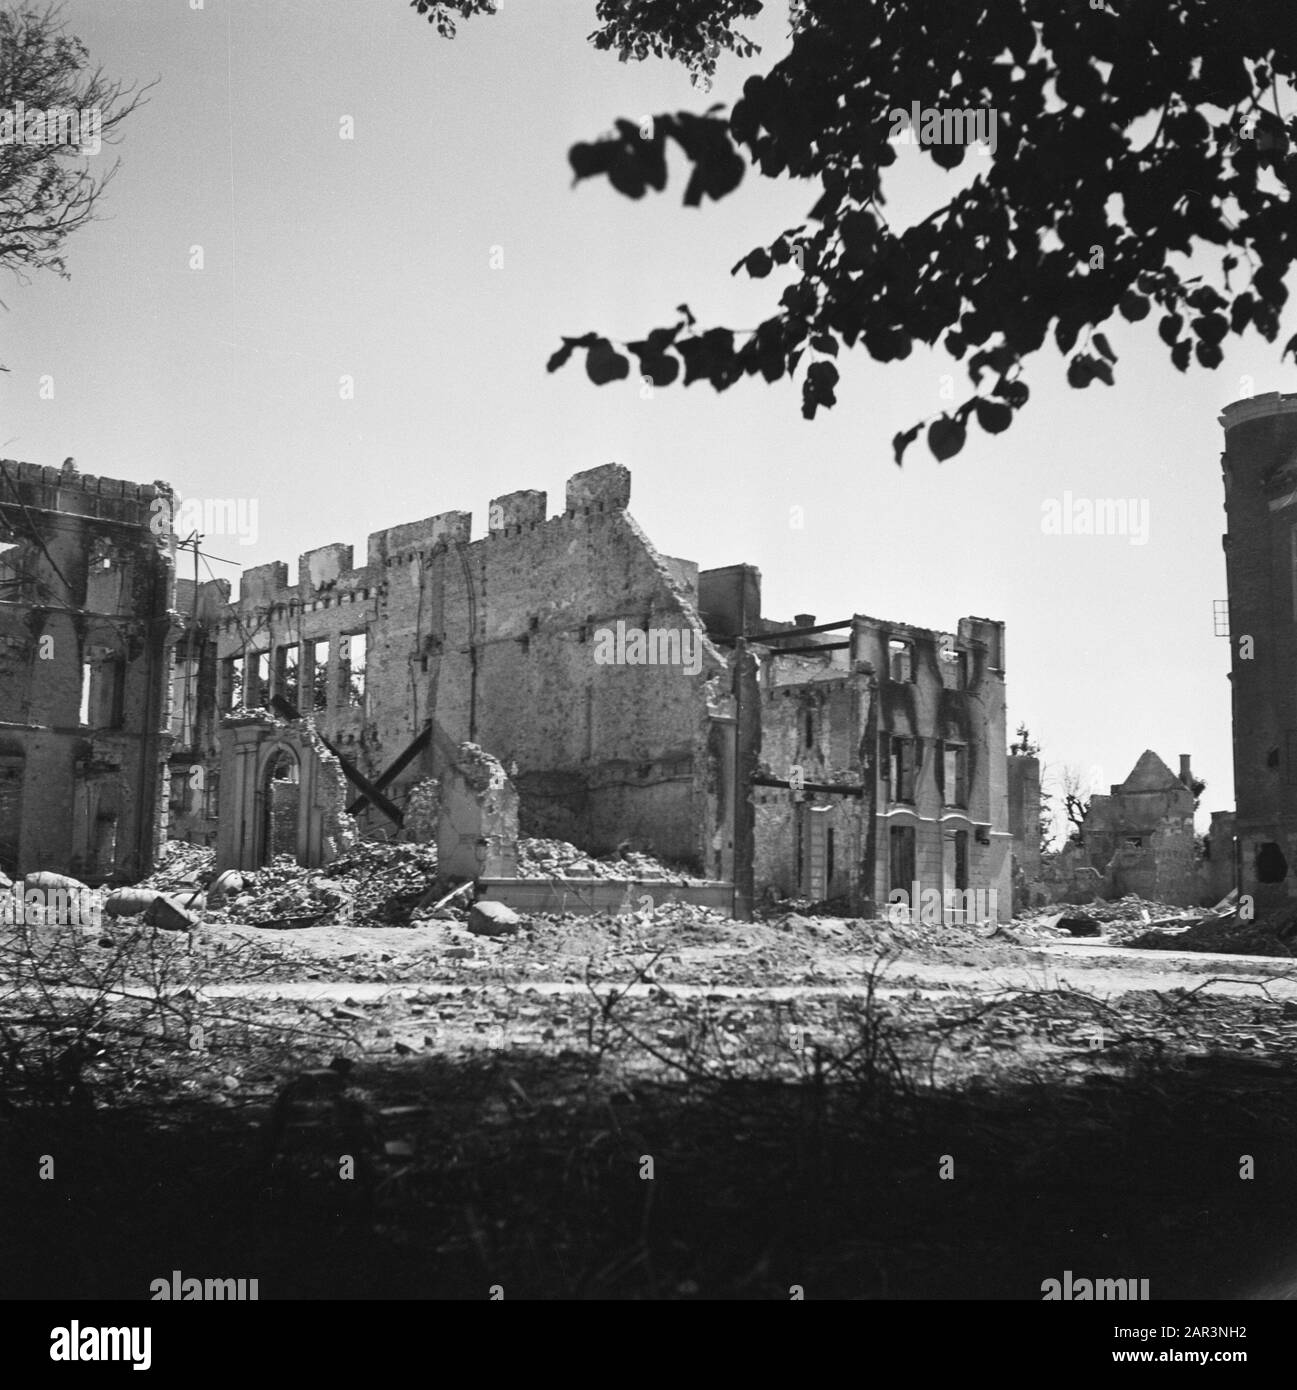 Vernielingen: Arnhem  [destroyed building] Date: June 1945 Location: Arnhem Keywords: buildings, Second World War, destruction Stock Photo